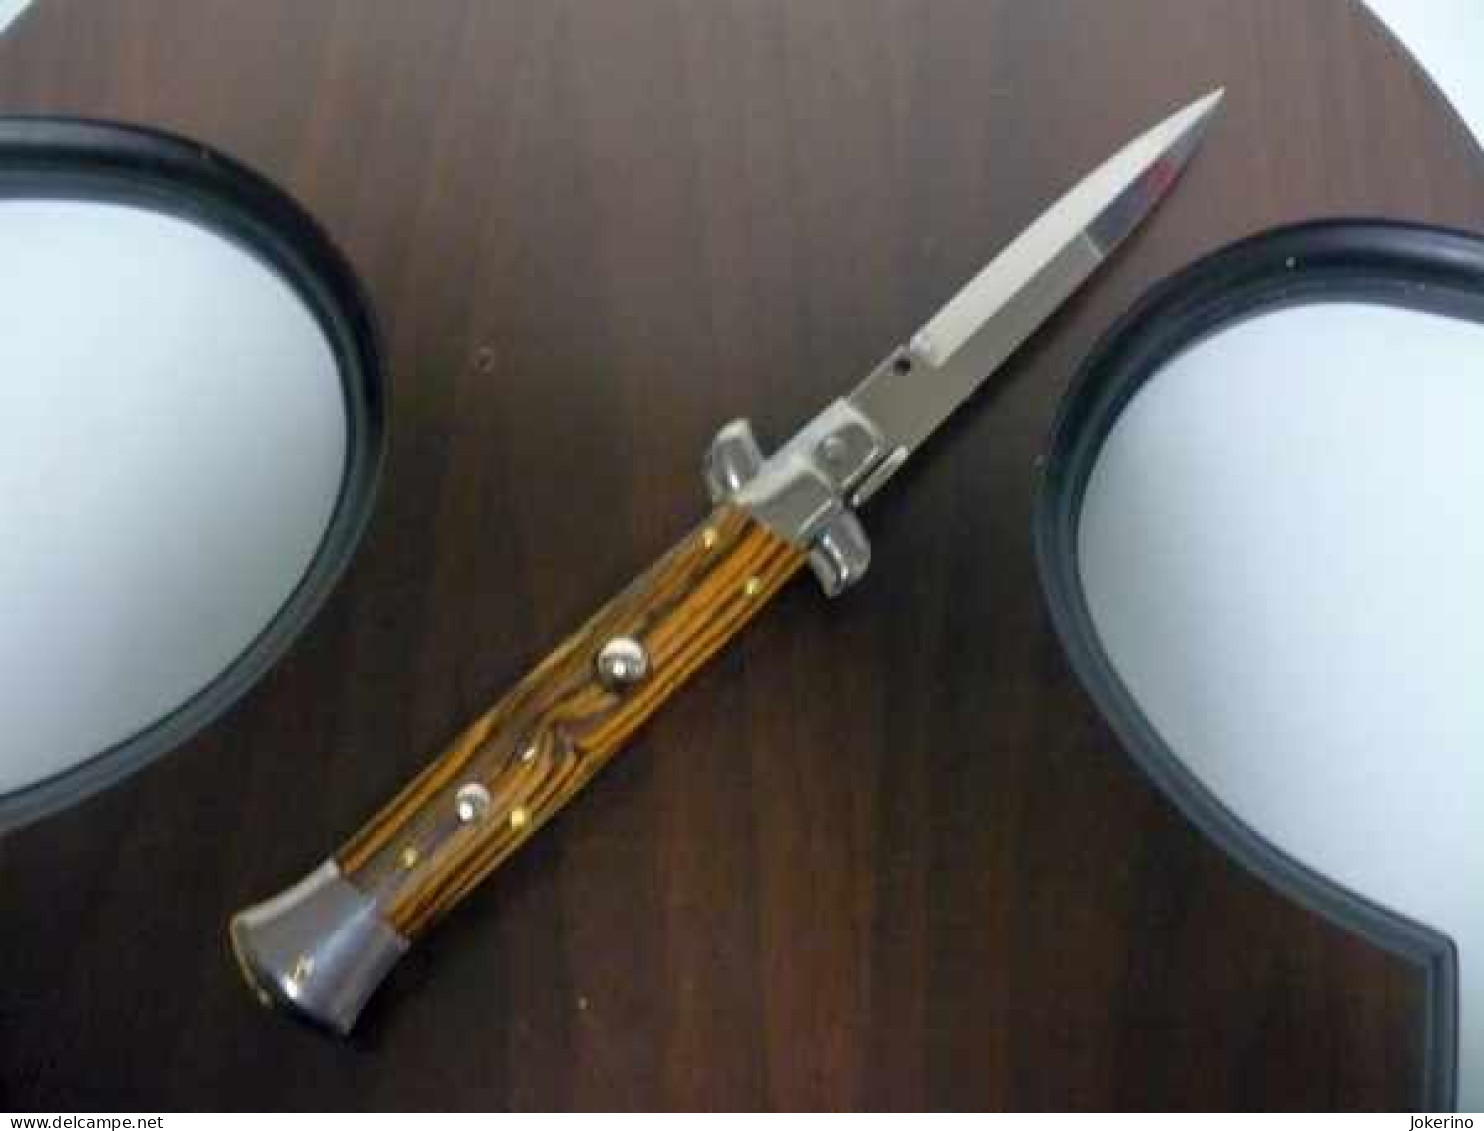 KNIFE-italian Stiletto-Maniago -Frank Beltrame-23cm-legno Pregiato ZIRICOTE - WOOD Modello FB 23/83B - NOVITA' - Armi Da Collezione